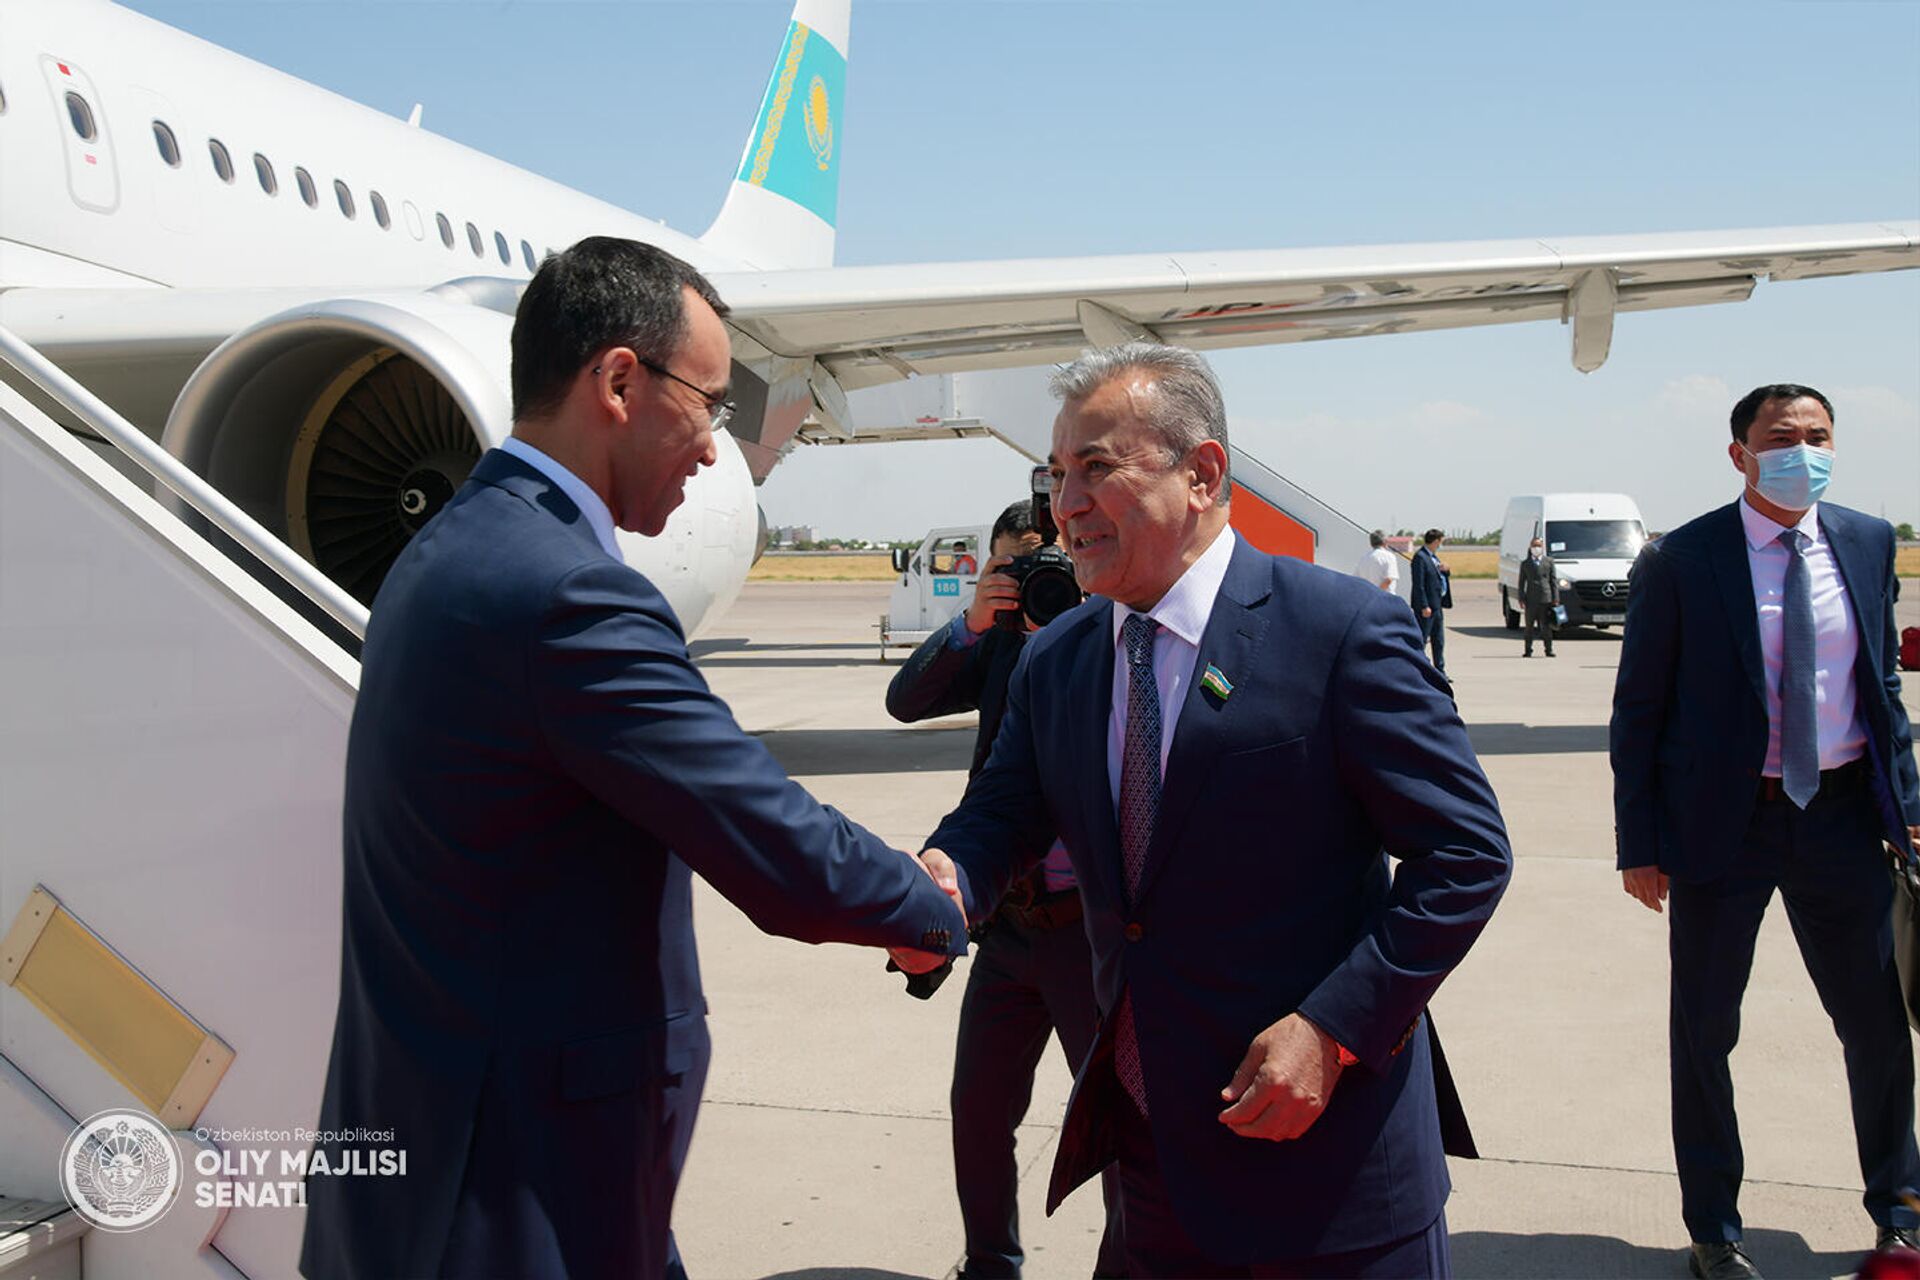 Председатель Сената Парламента Республики Казахстан Маулен Ашимбаев прибыл с официальным визитом в Ташкент - Sputnik Узбекистан, 1920, 03.06.2021